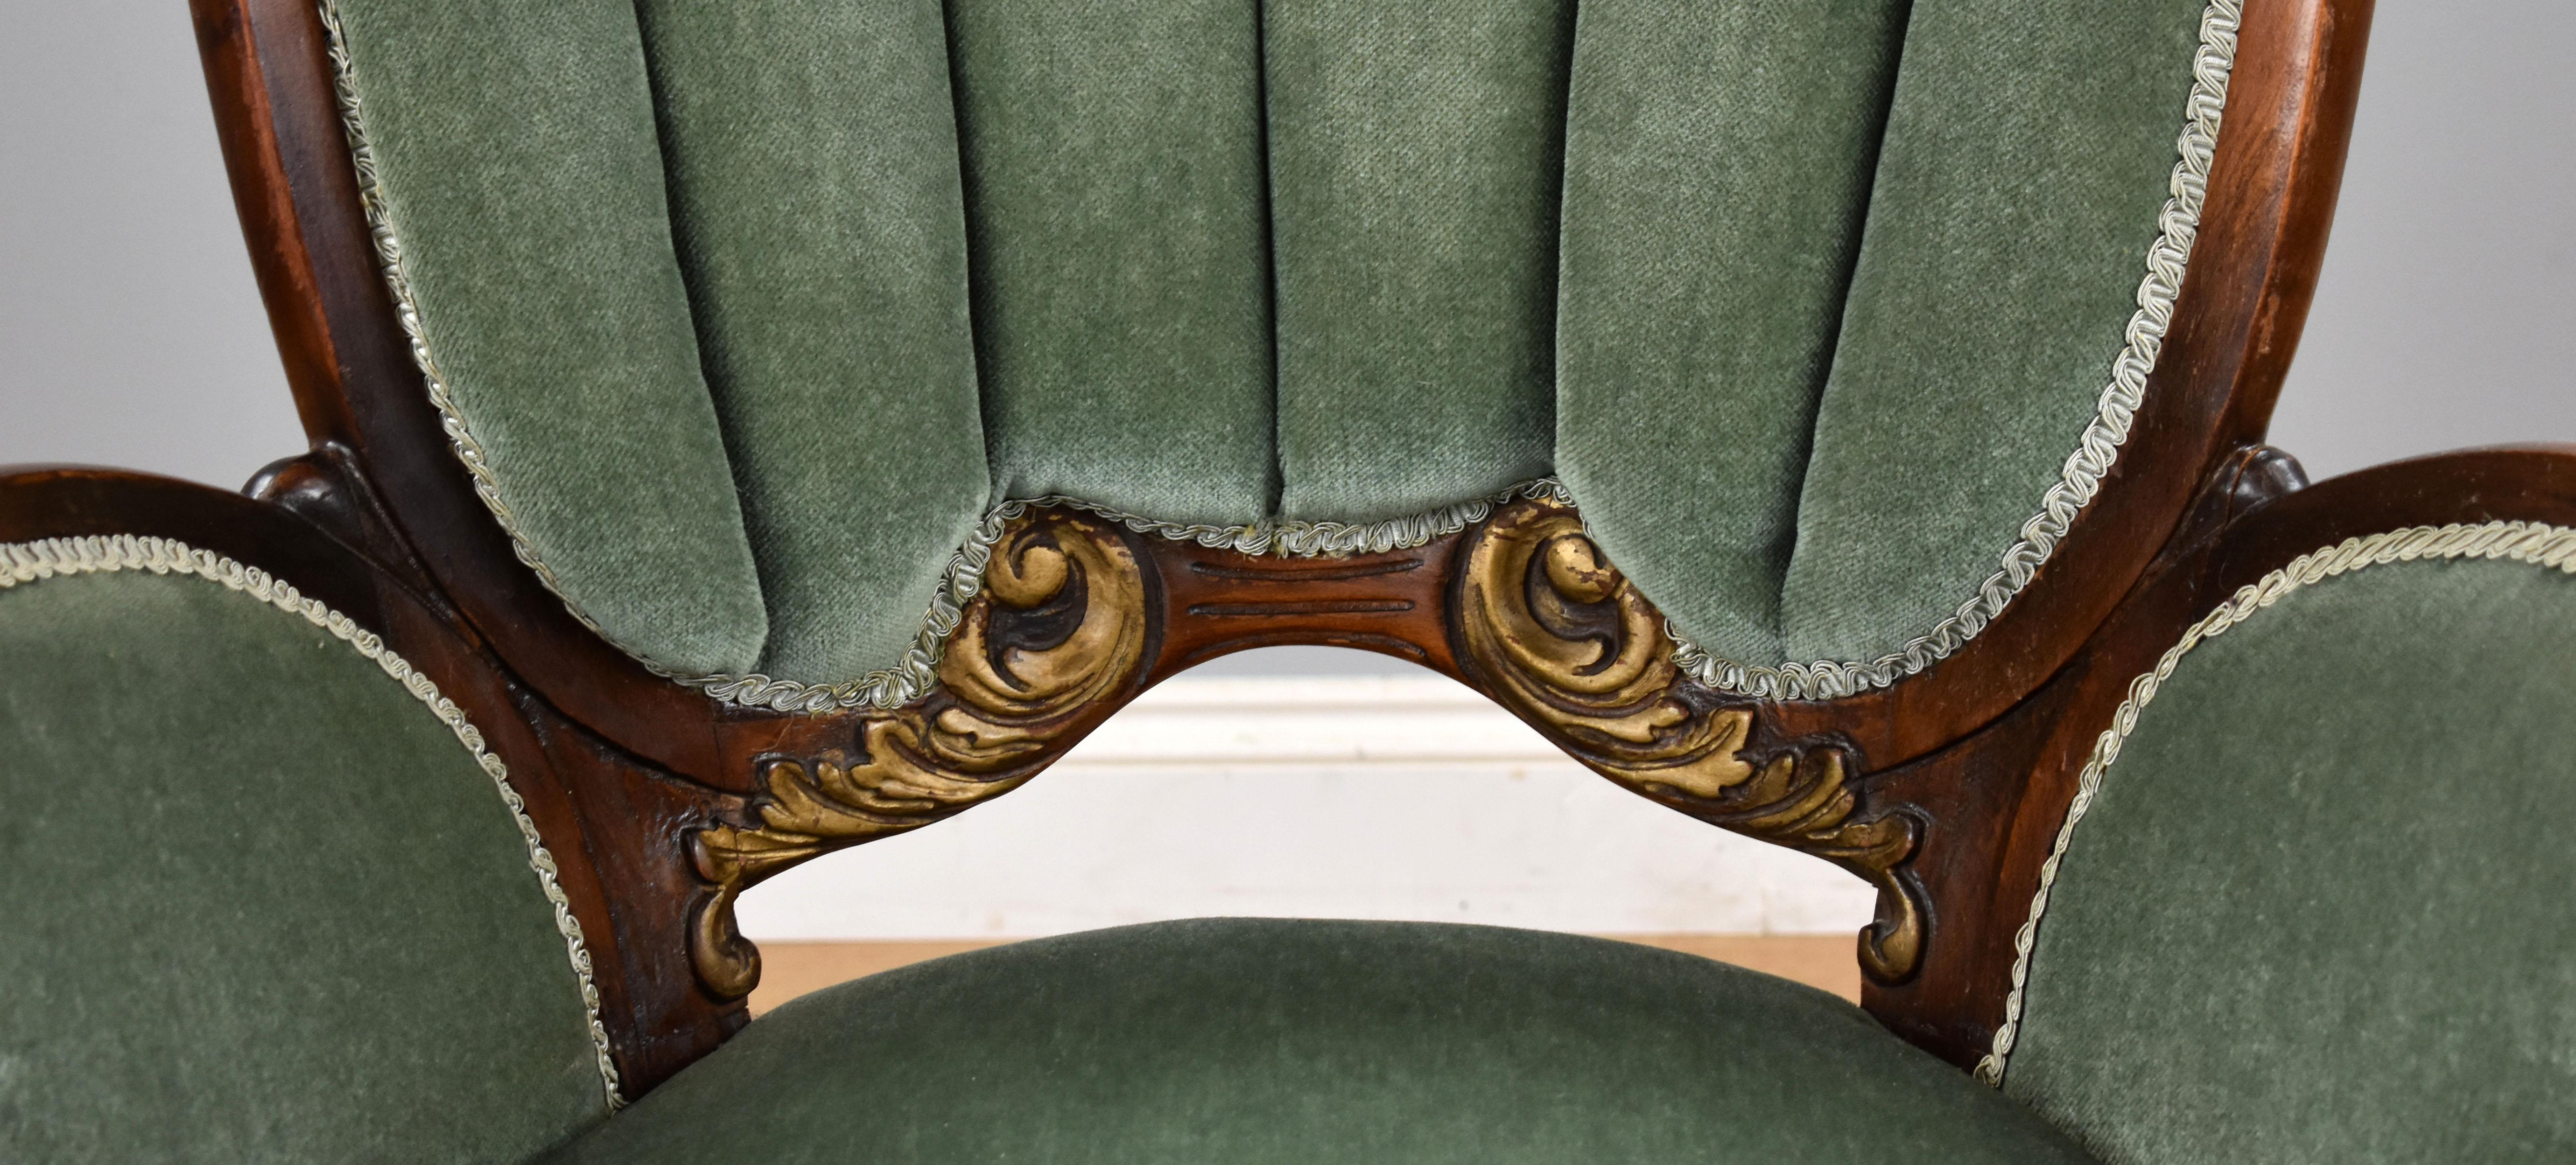 19th Century English Victorian Parlour Chair 3